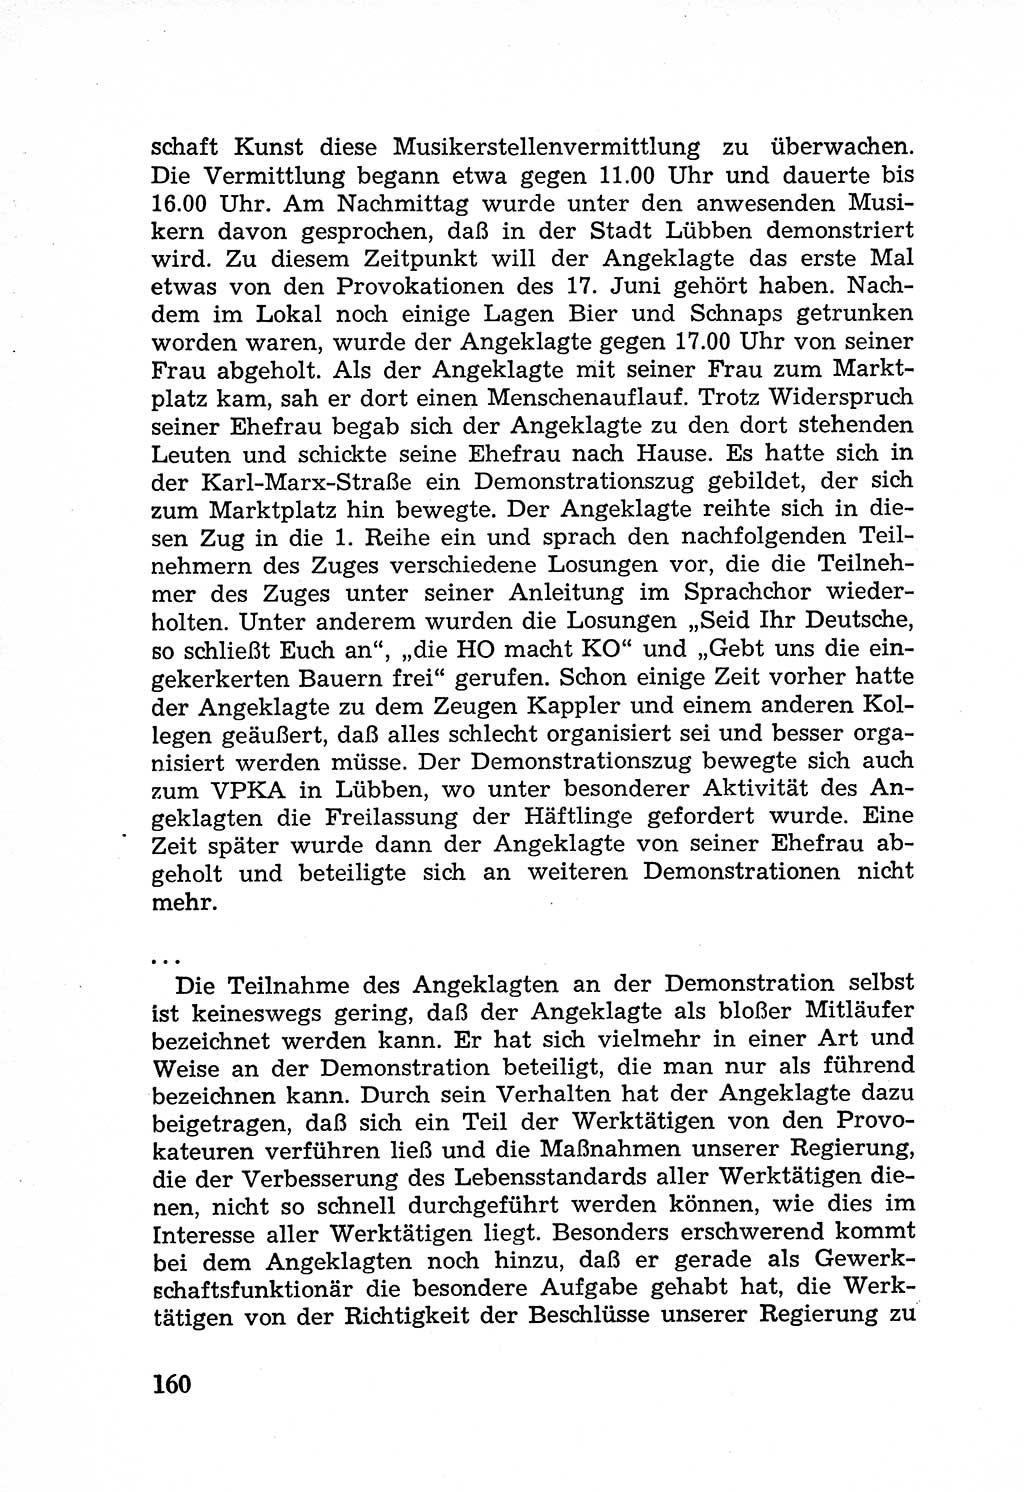 Rechtsstaat in zweierlei Hinsicht, Untersuchungsausschuß freiheitlicher Juristen (UfJ) [Bundesrepublik Deutschland (BRD)] 1956, Seite 160 (R.-St. UfJ BRD 1956, S. 160)